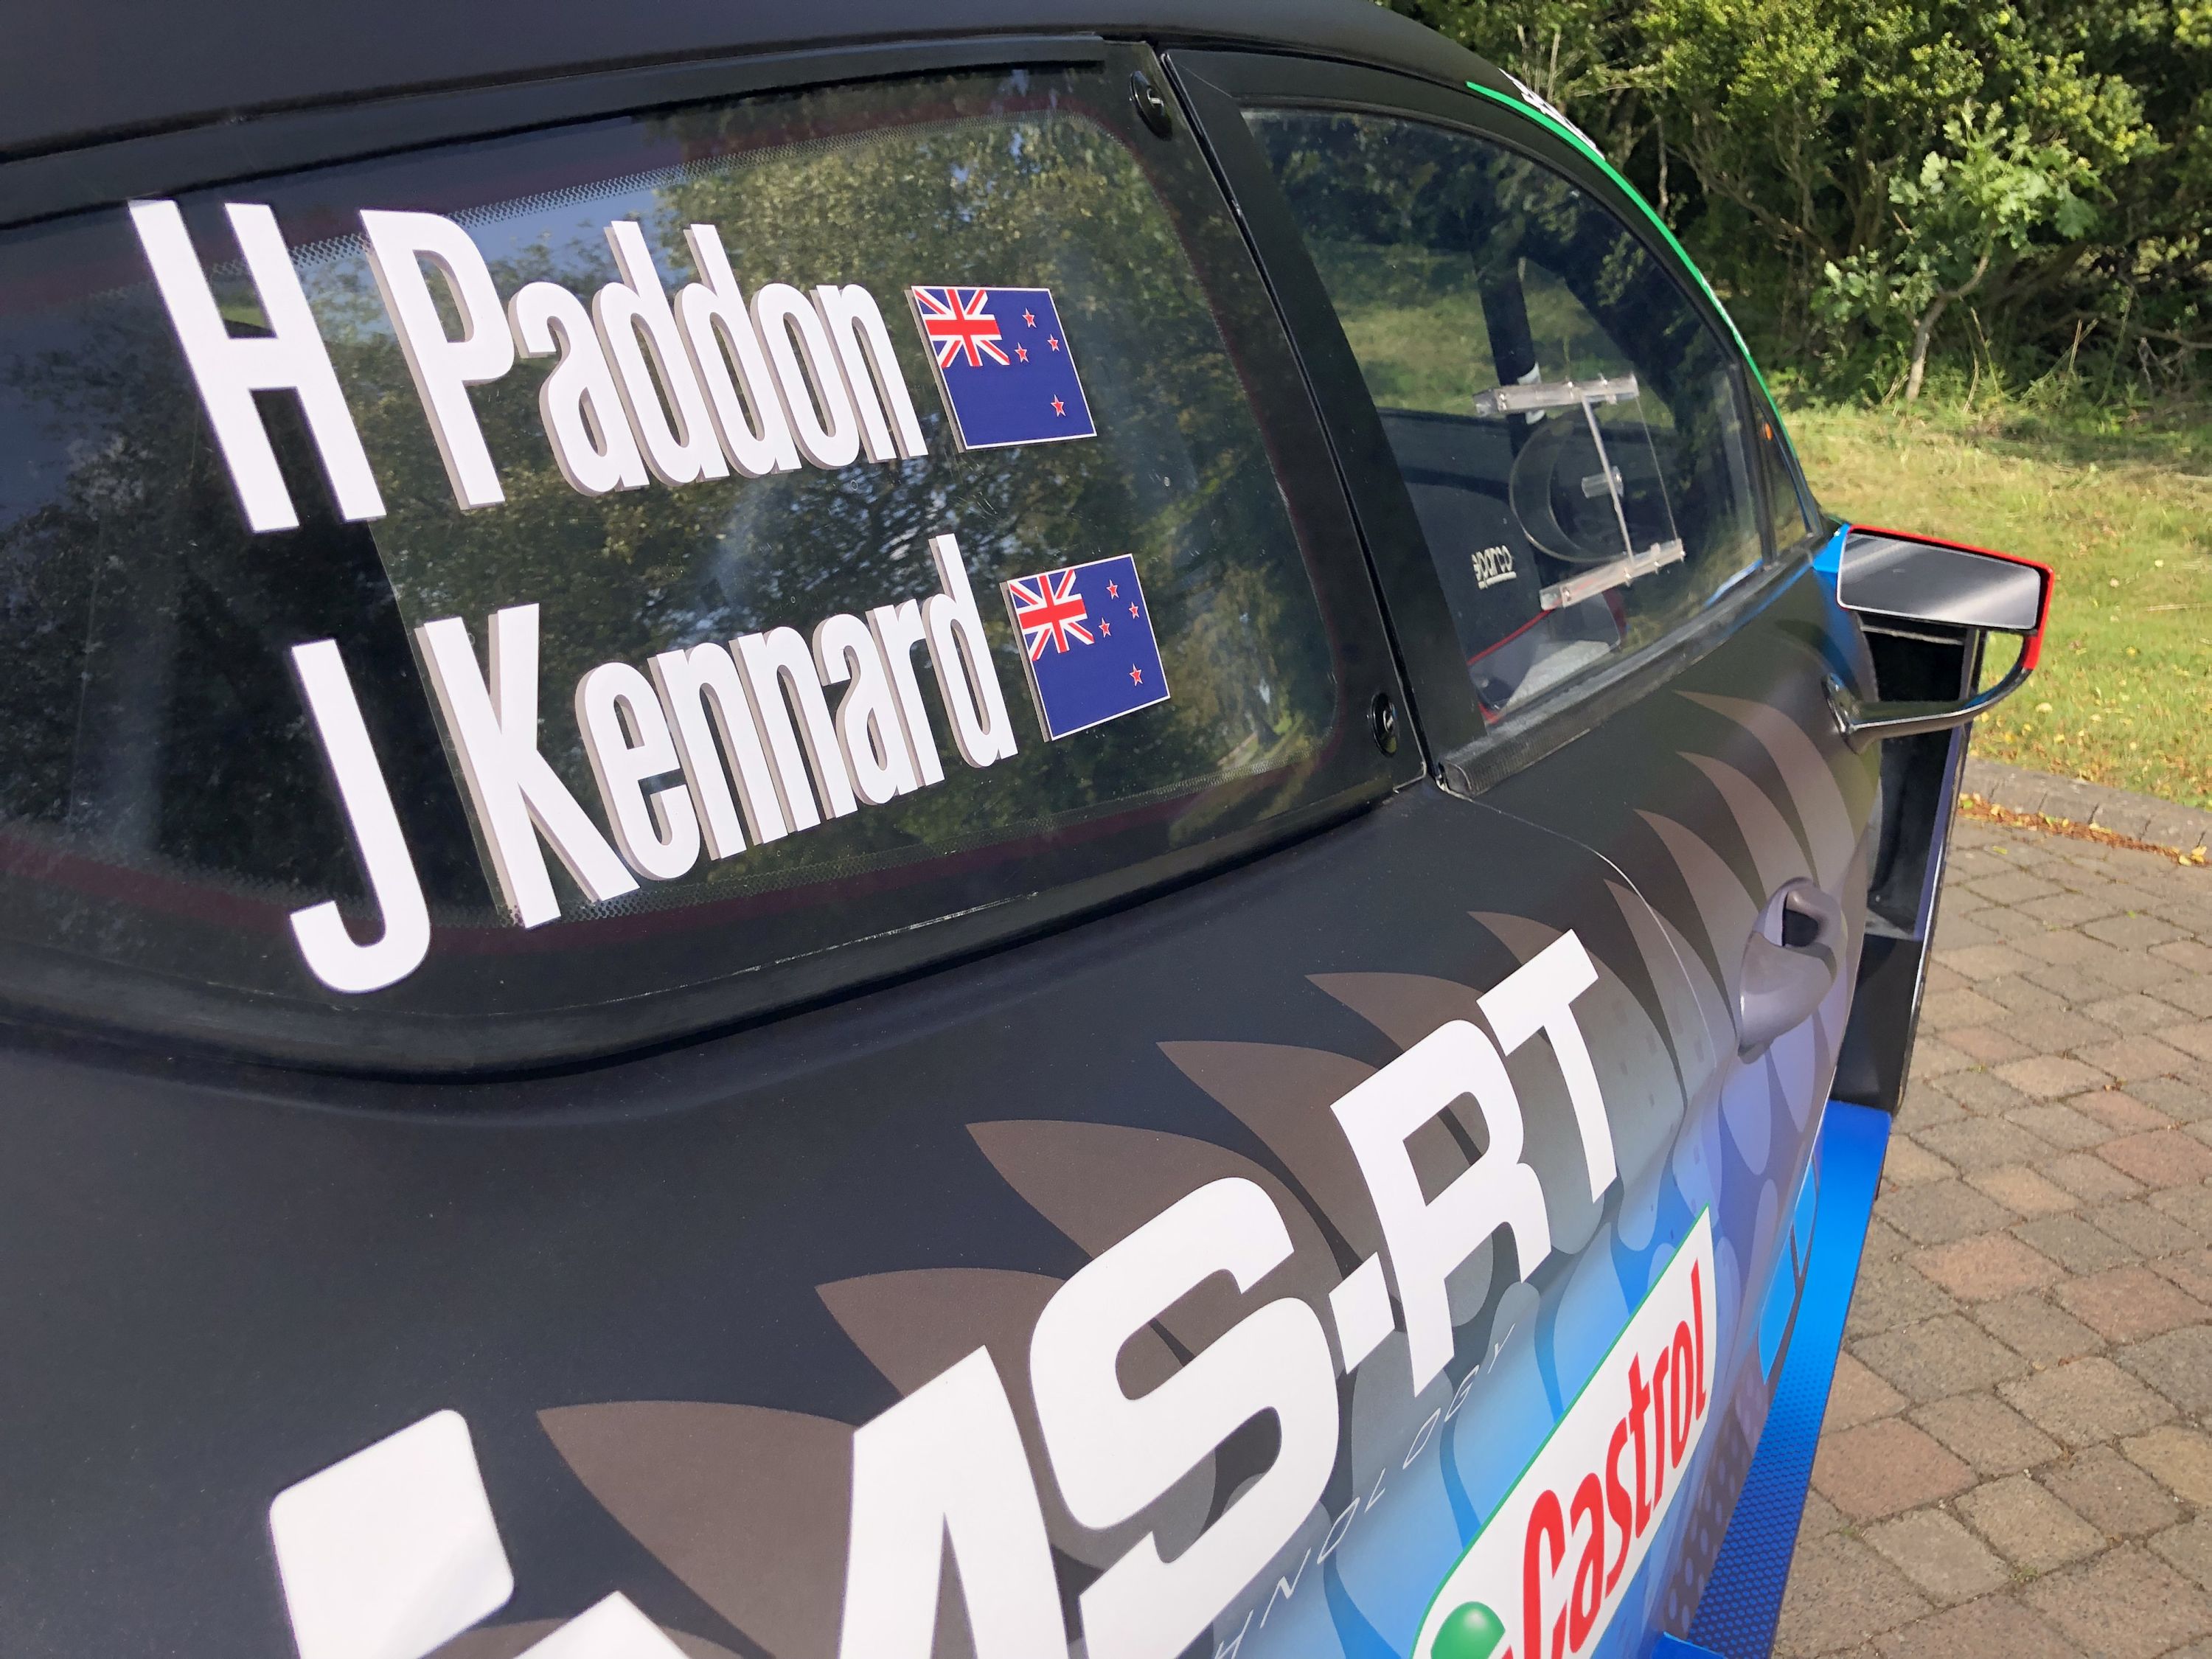 paddon ford fiesta WRC